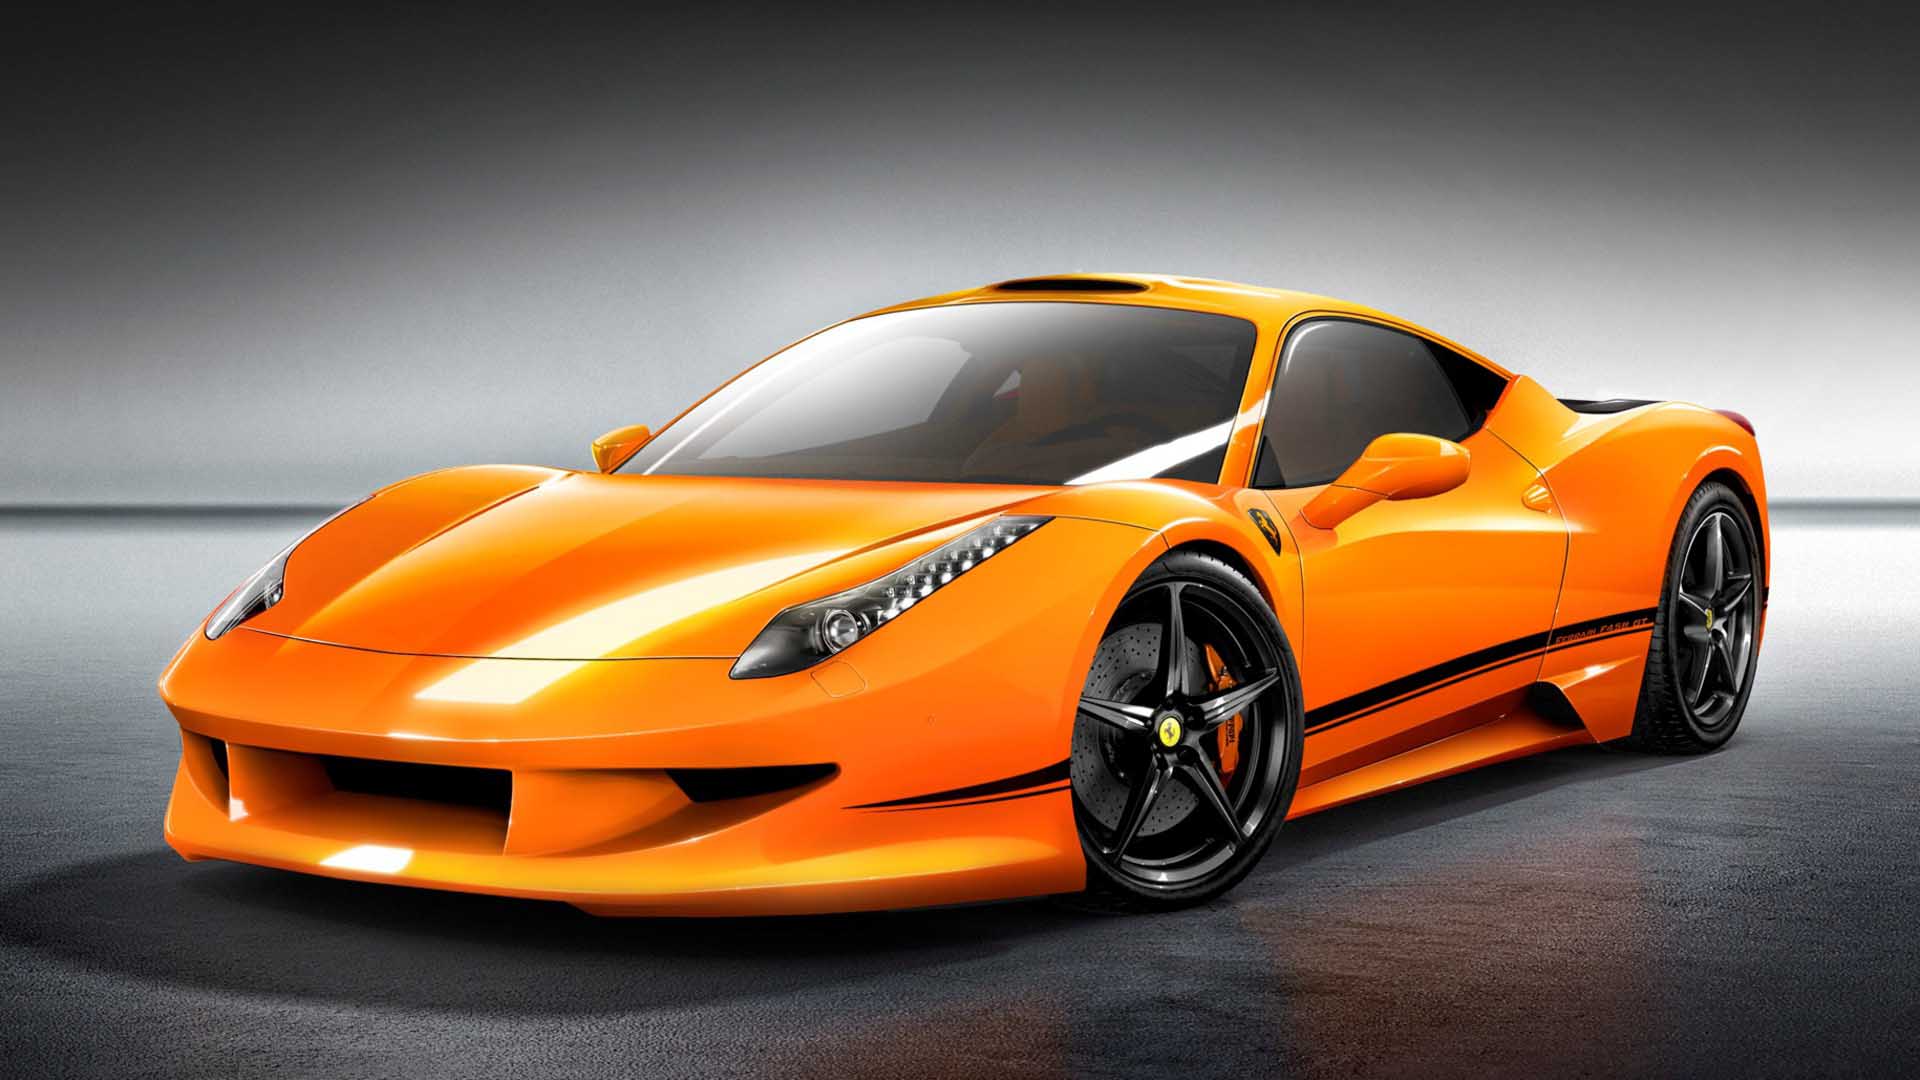 Với các hình nền ô tô màu cam, bạn không chỉ có thể thấy sự đẹp mắt của các xe hơi mà còn cảm nhận được sức mạnh và tốc độ của chúng. Màu cam sẽ làm cho bạn cảm thấy tự tin và nổi bật.